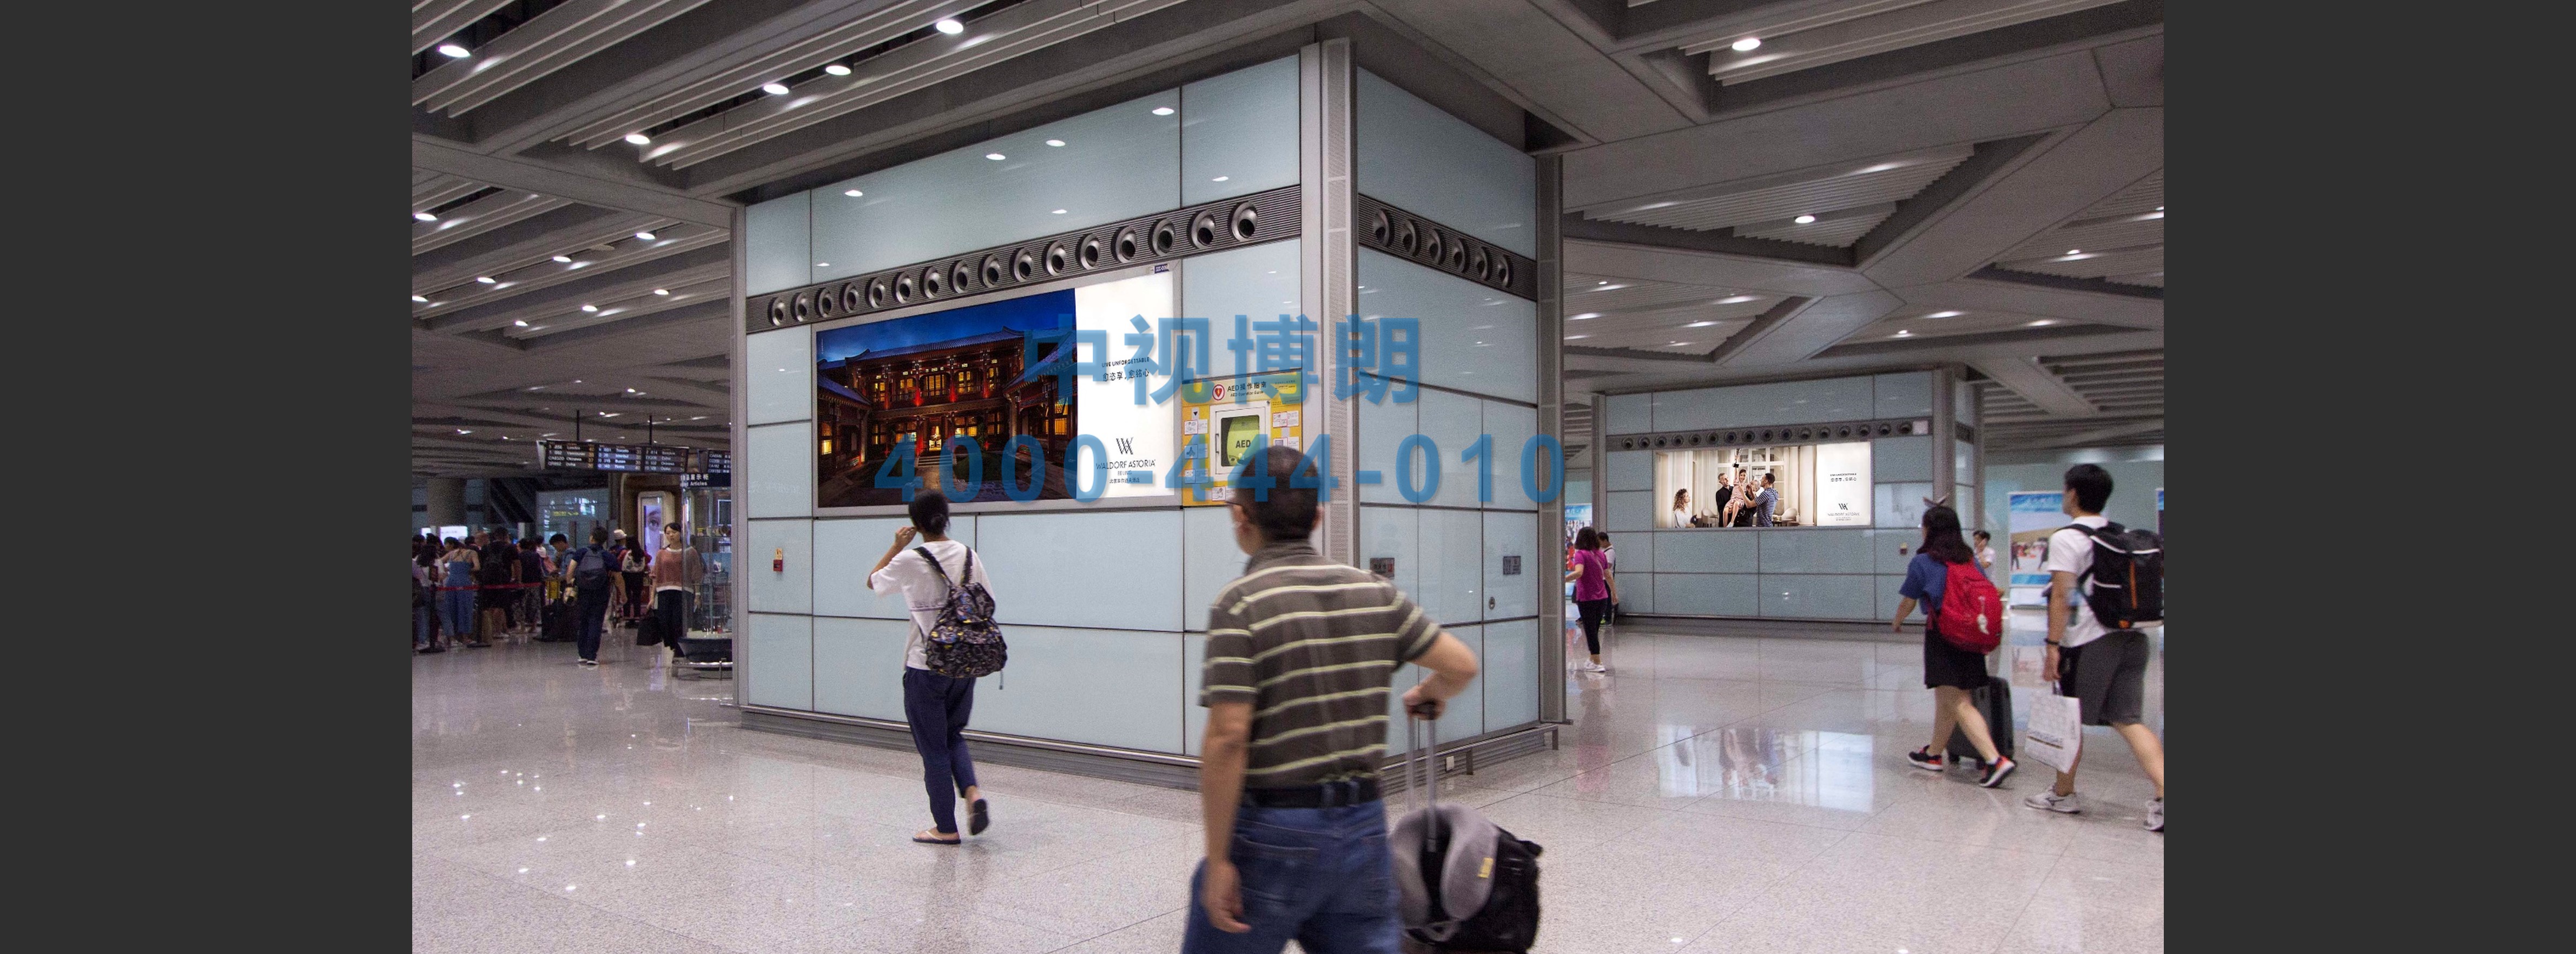 北京首都机场广告-T3国际到达人群聚集处联排灯箱